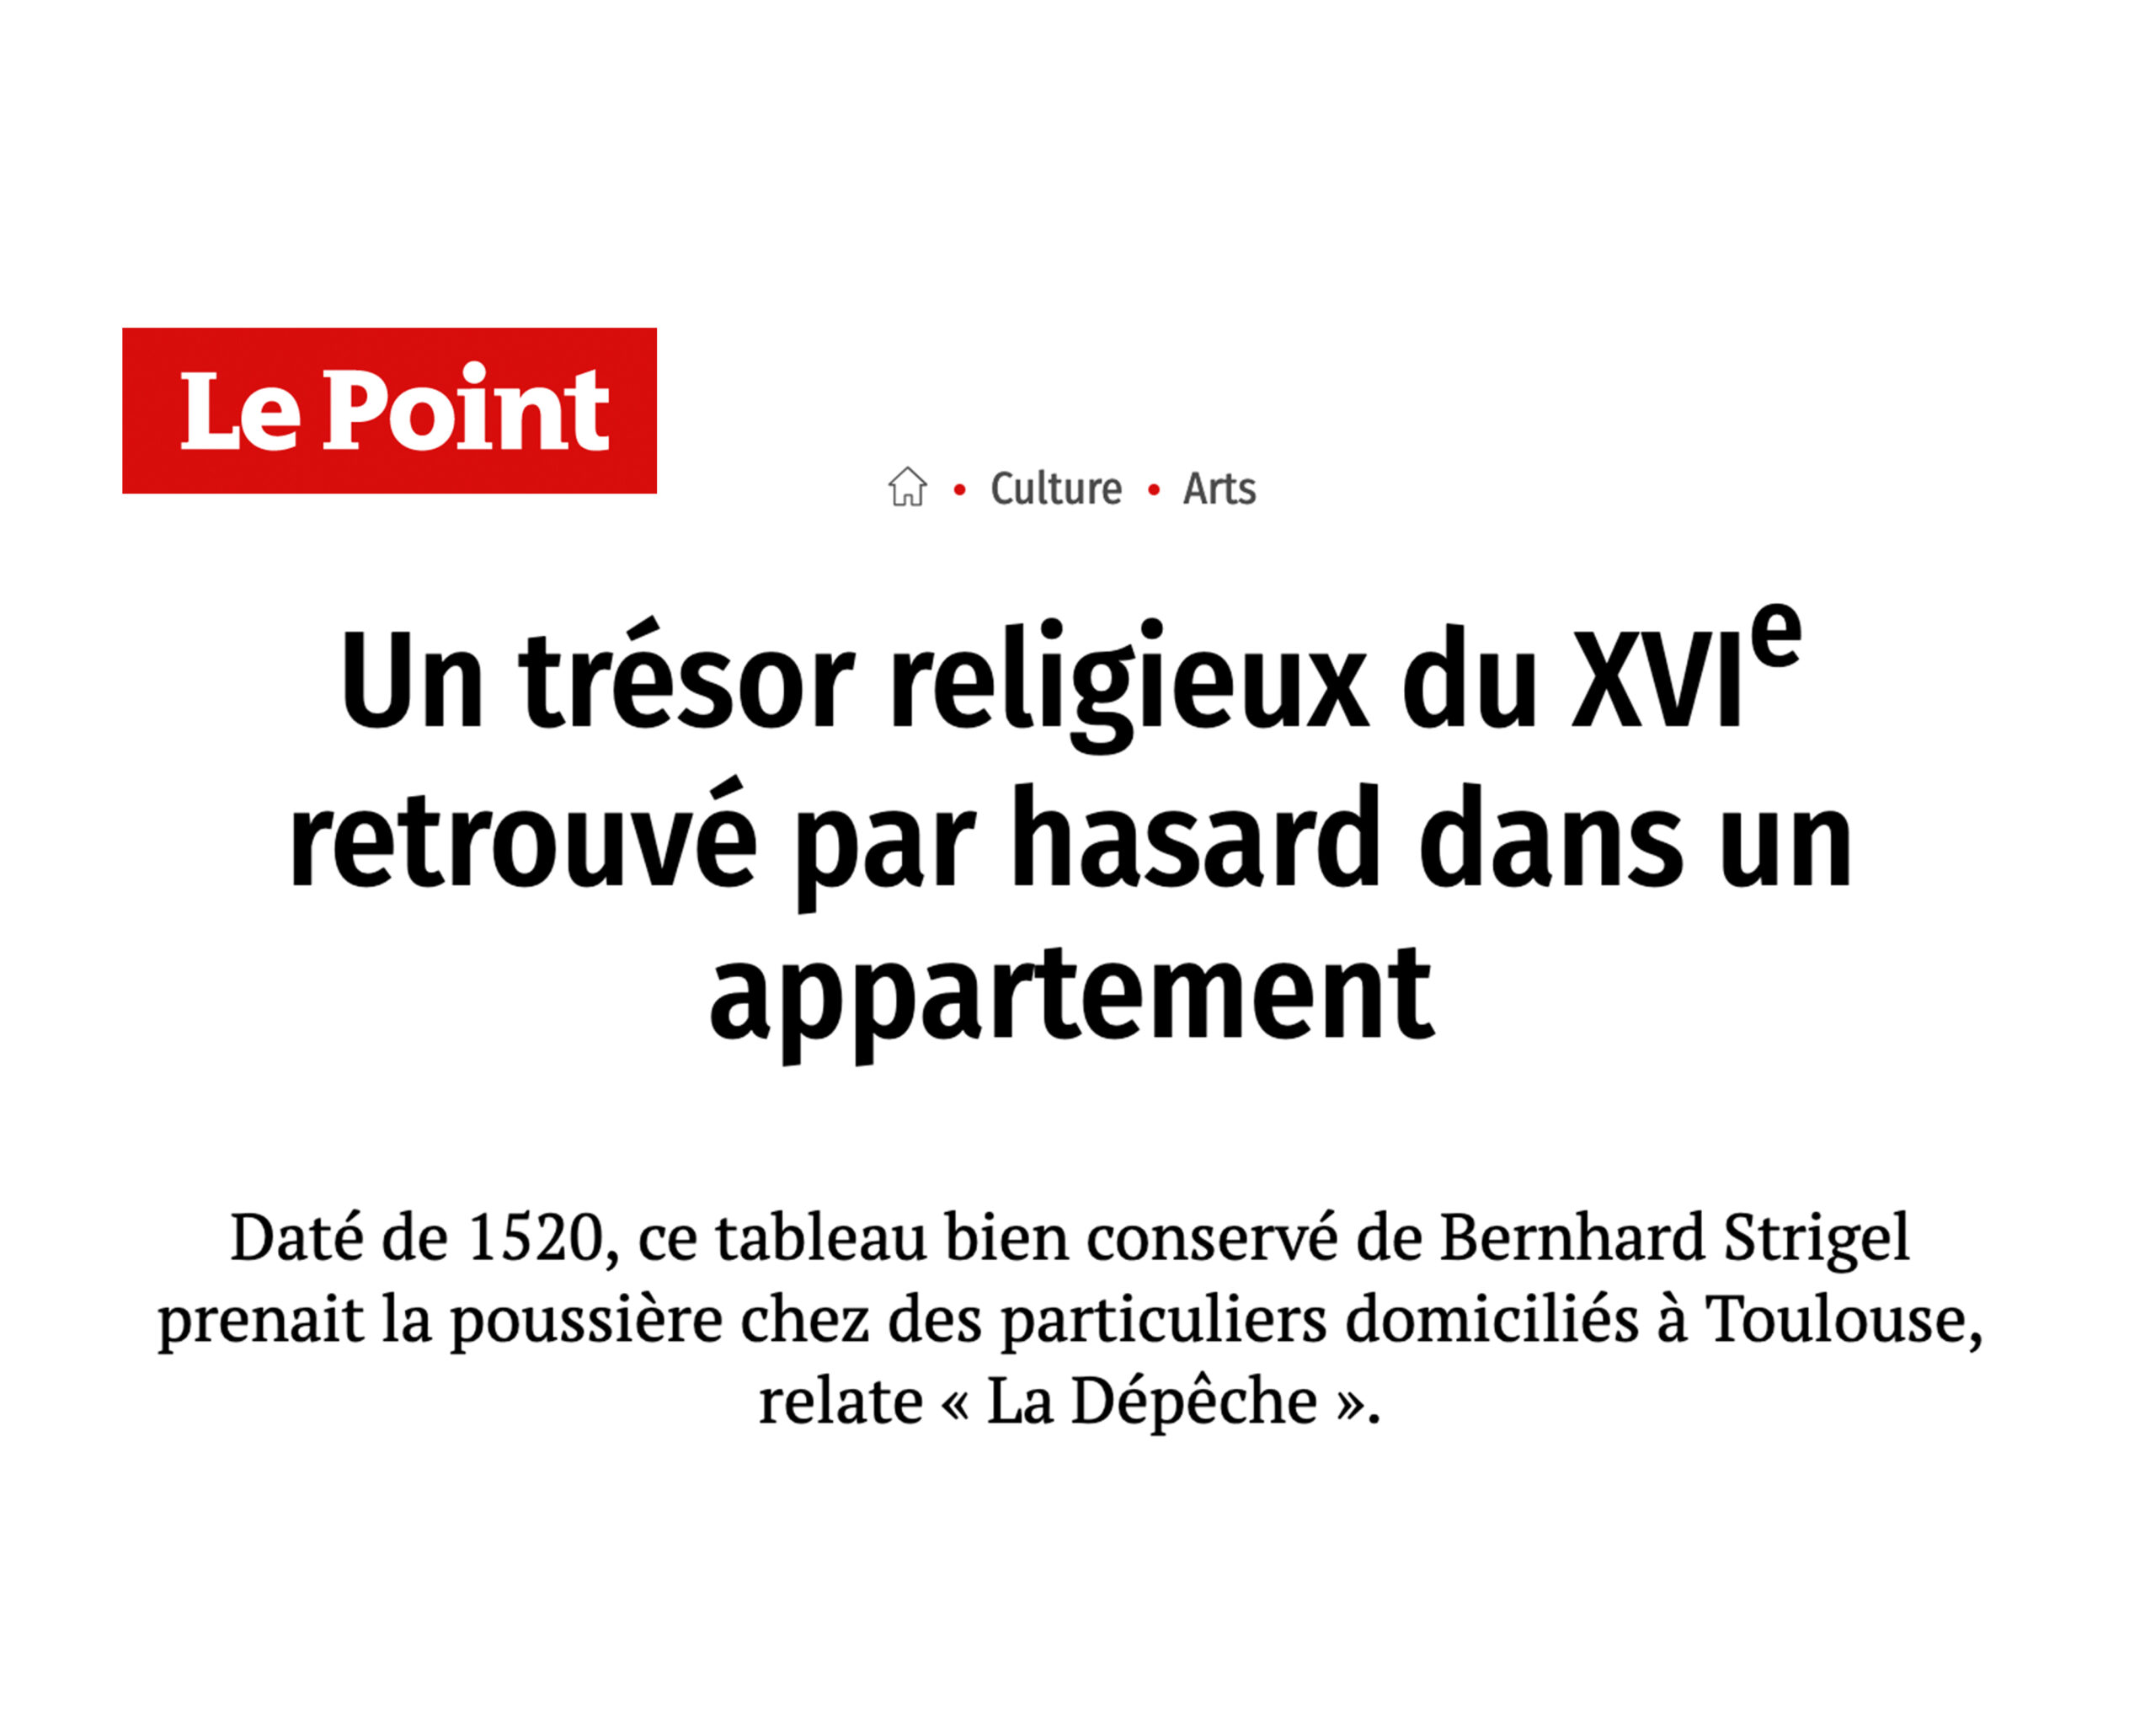 « Un trésor religieux du XVIe retrouvé par hasard dans un appartement », 6 janvier 2022